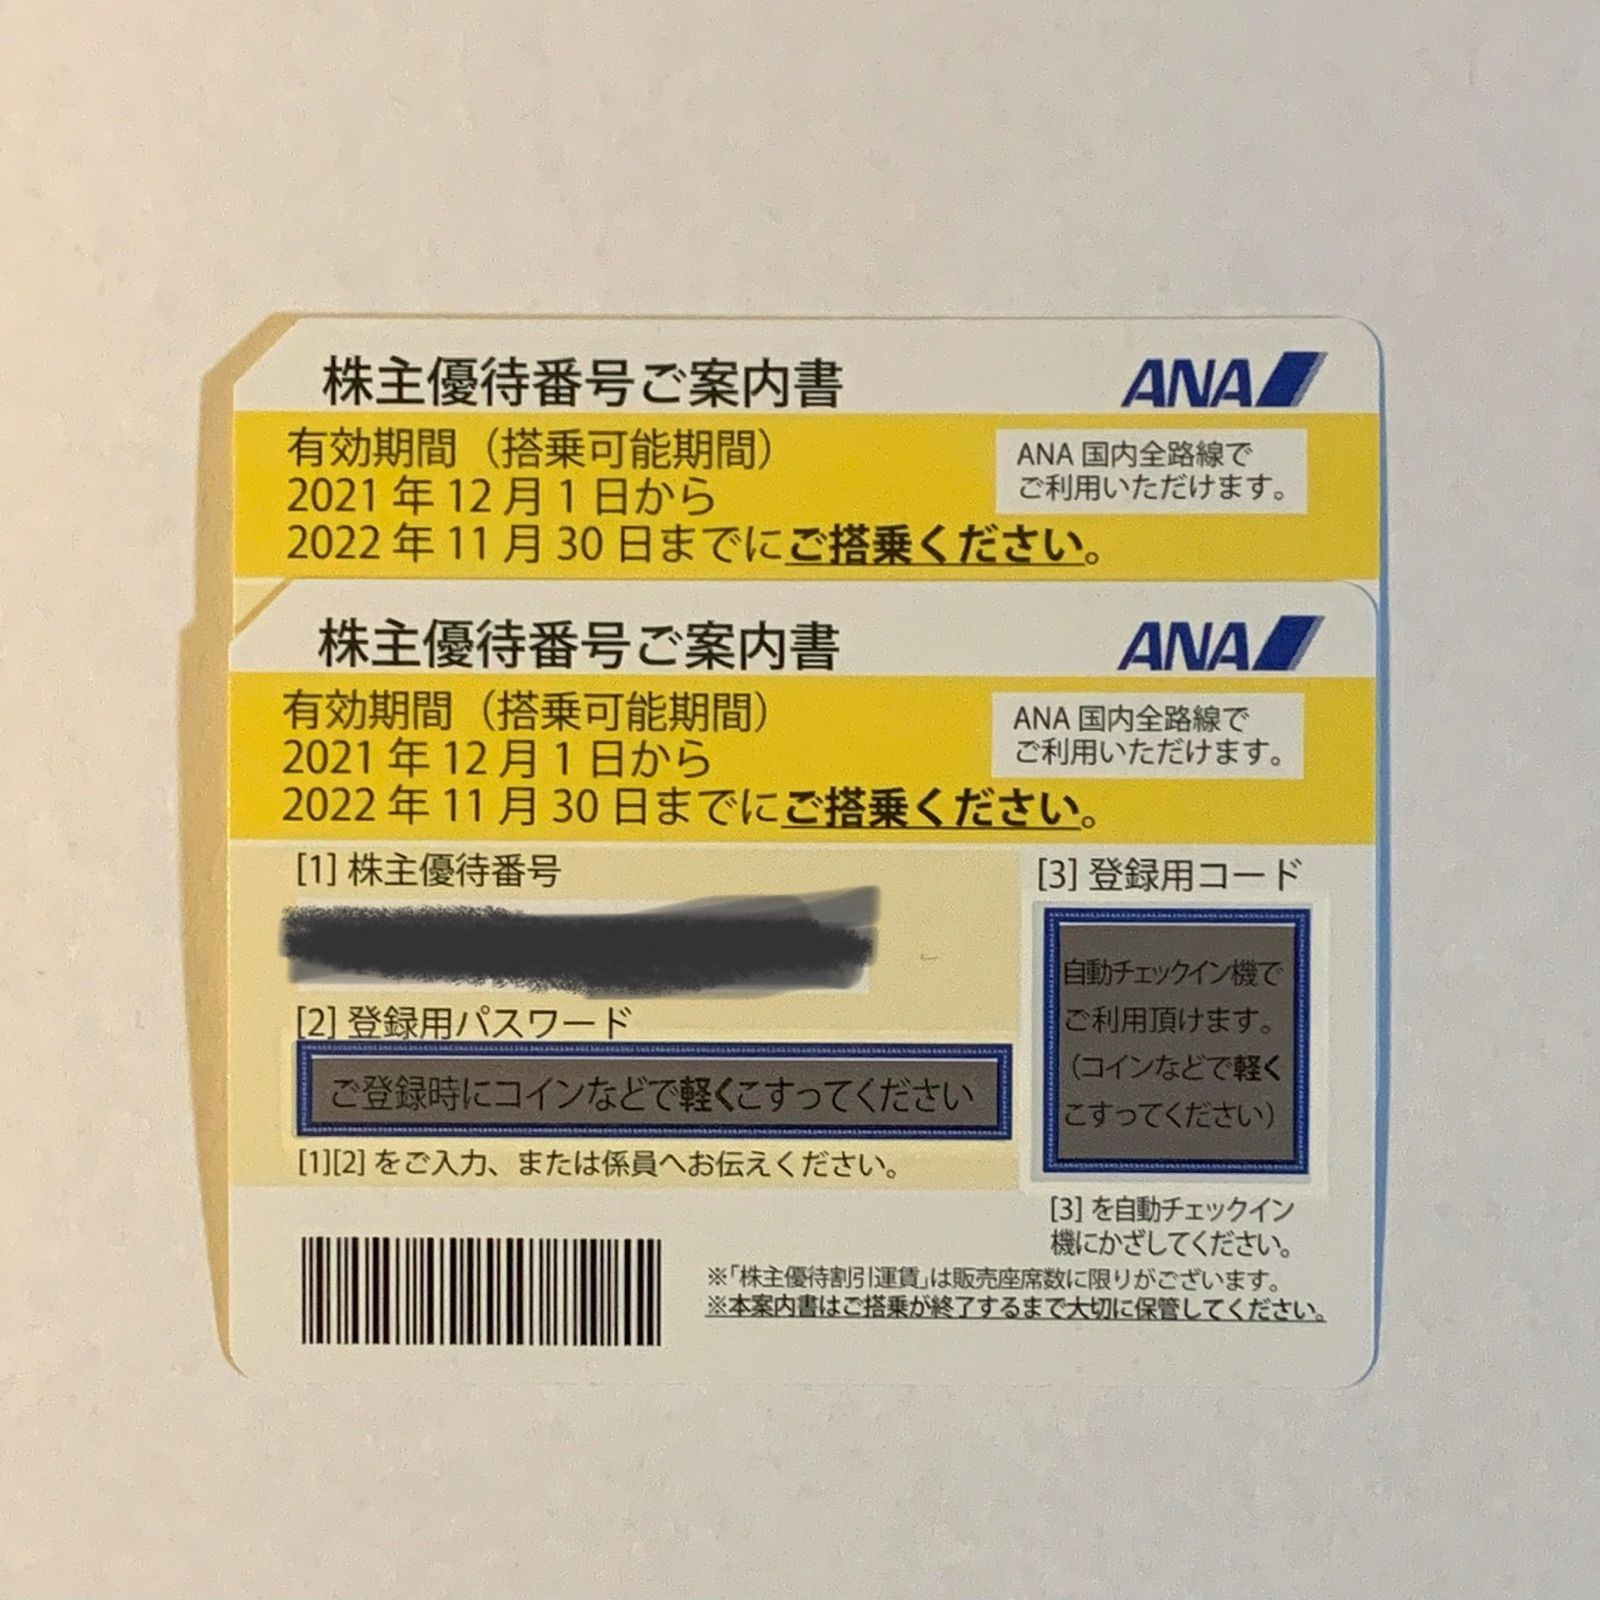 ANA 全日空 株主優待 2枚セット - メルカリ